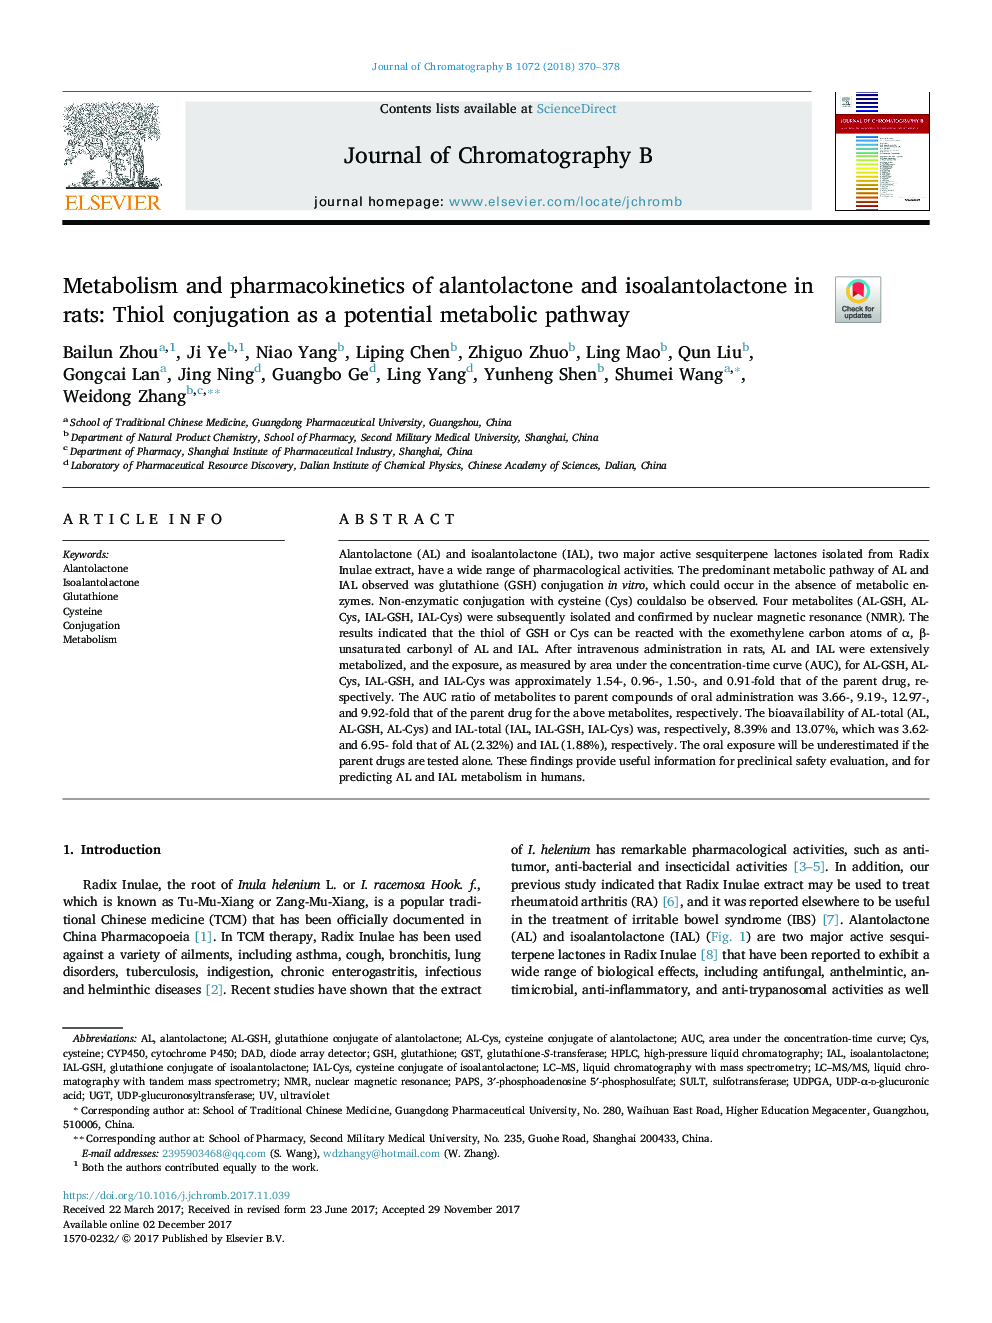 متابولیسم و ​​فارماکوکینتیک آلانتوالکتون و ایزوالانتوالکتون در موش صحرائی: تلقیح تیول به عنوان یک روش متابولیک بالقوه 